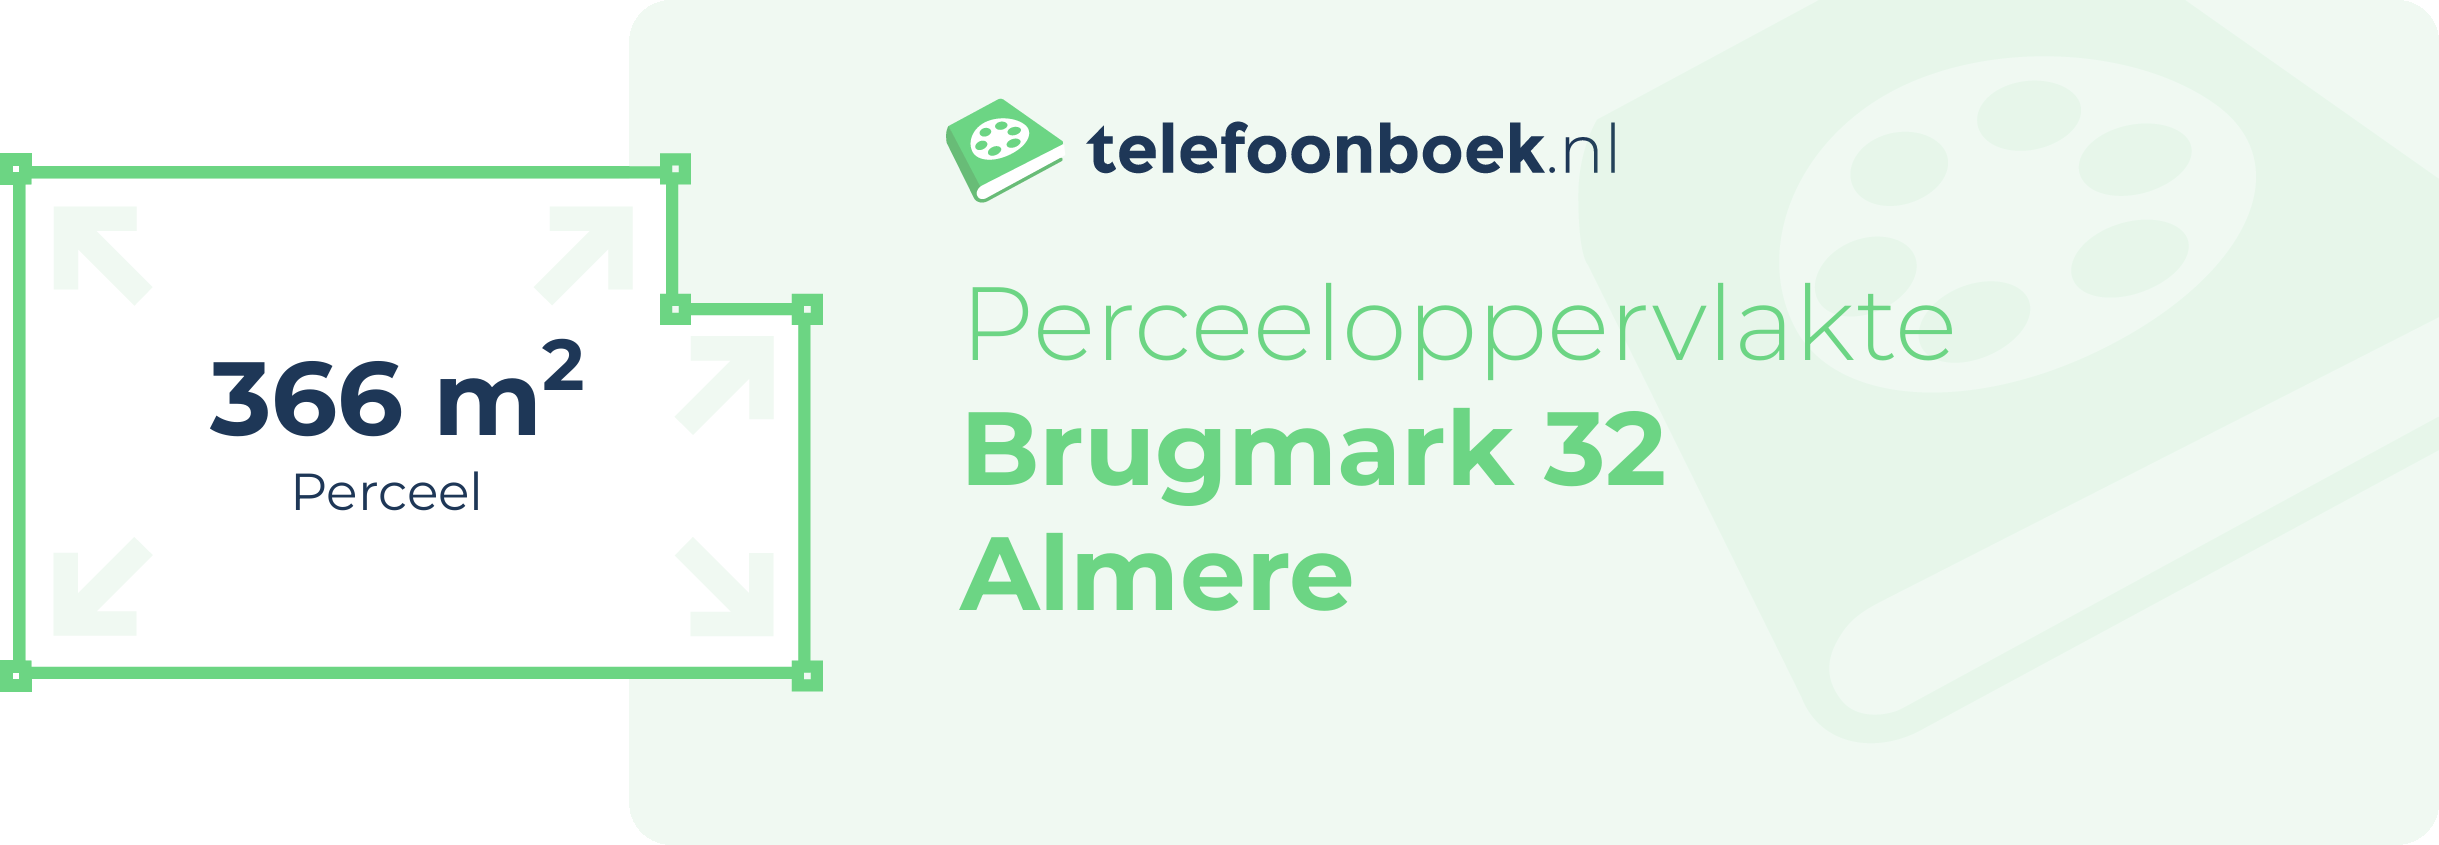 Perceeloppervlakte Brugmark 32 Almere